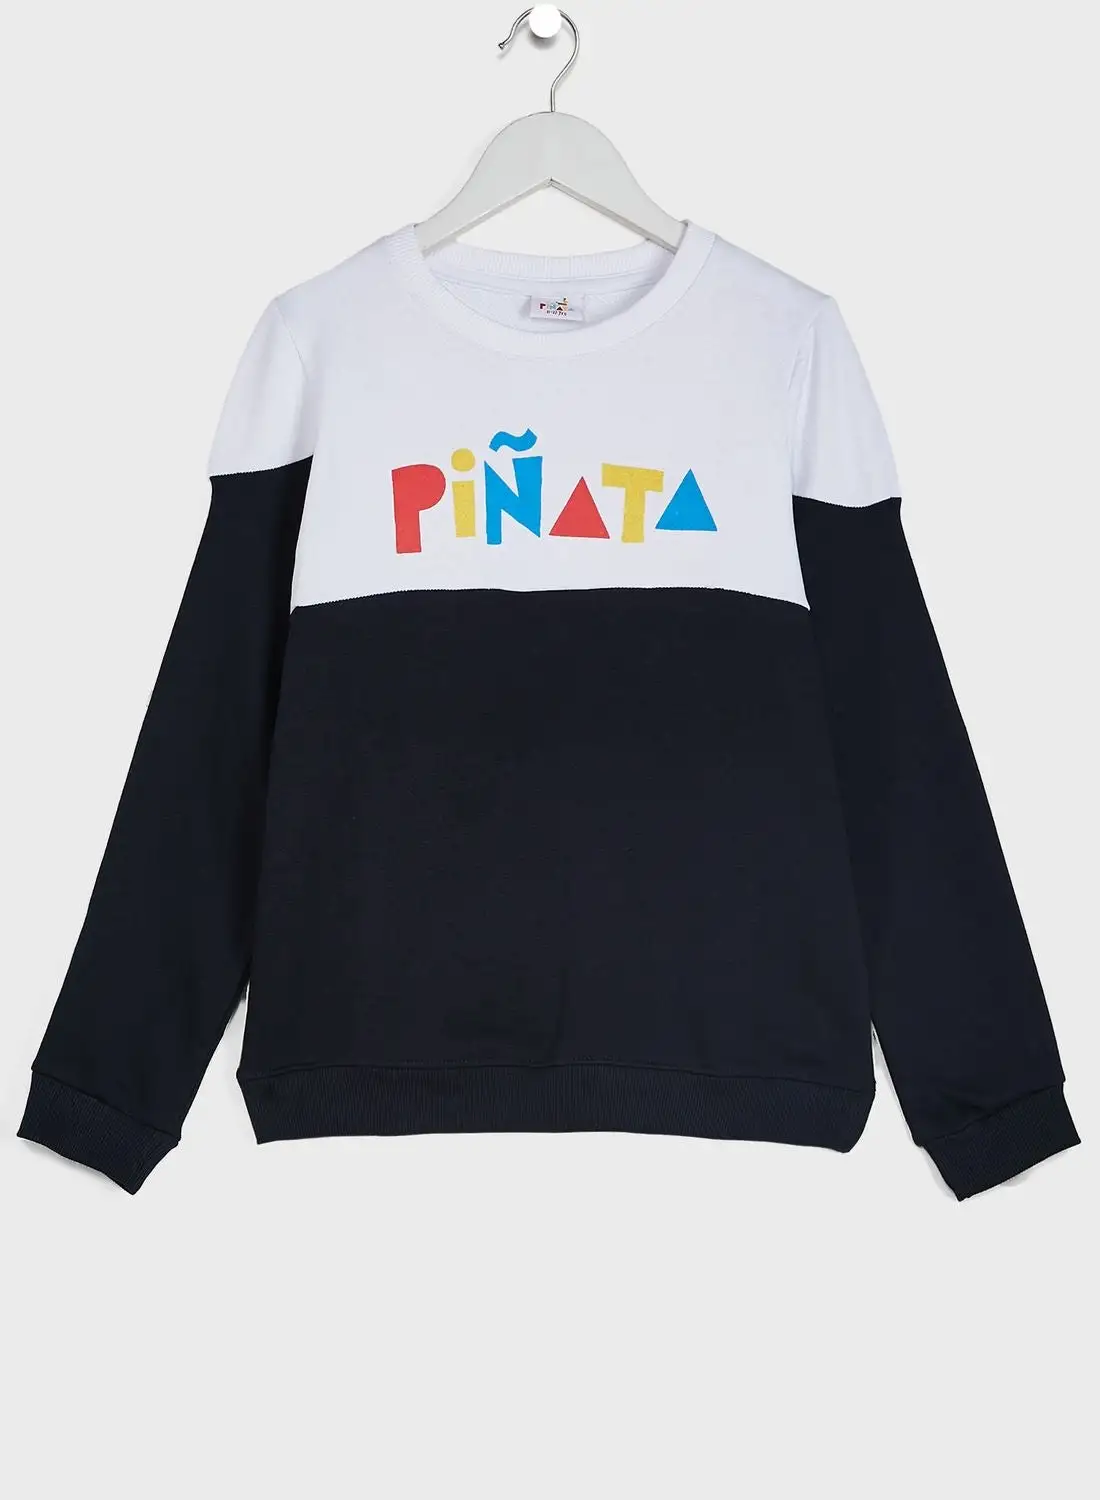 Pinata Youth Printed Sweatshirt